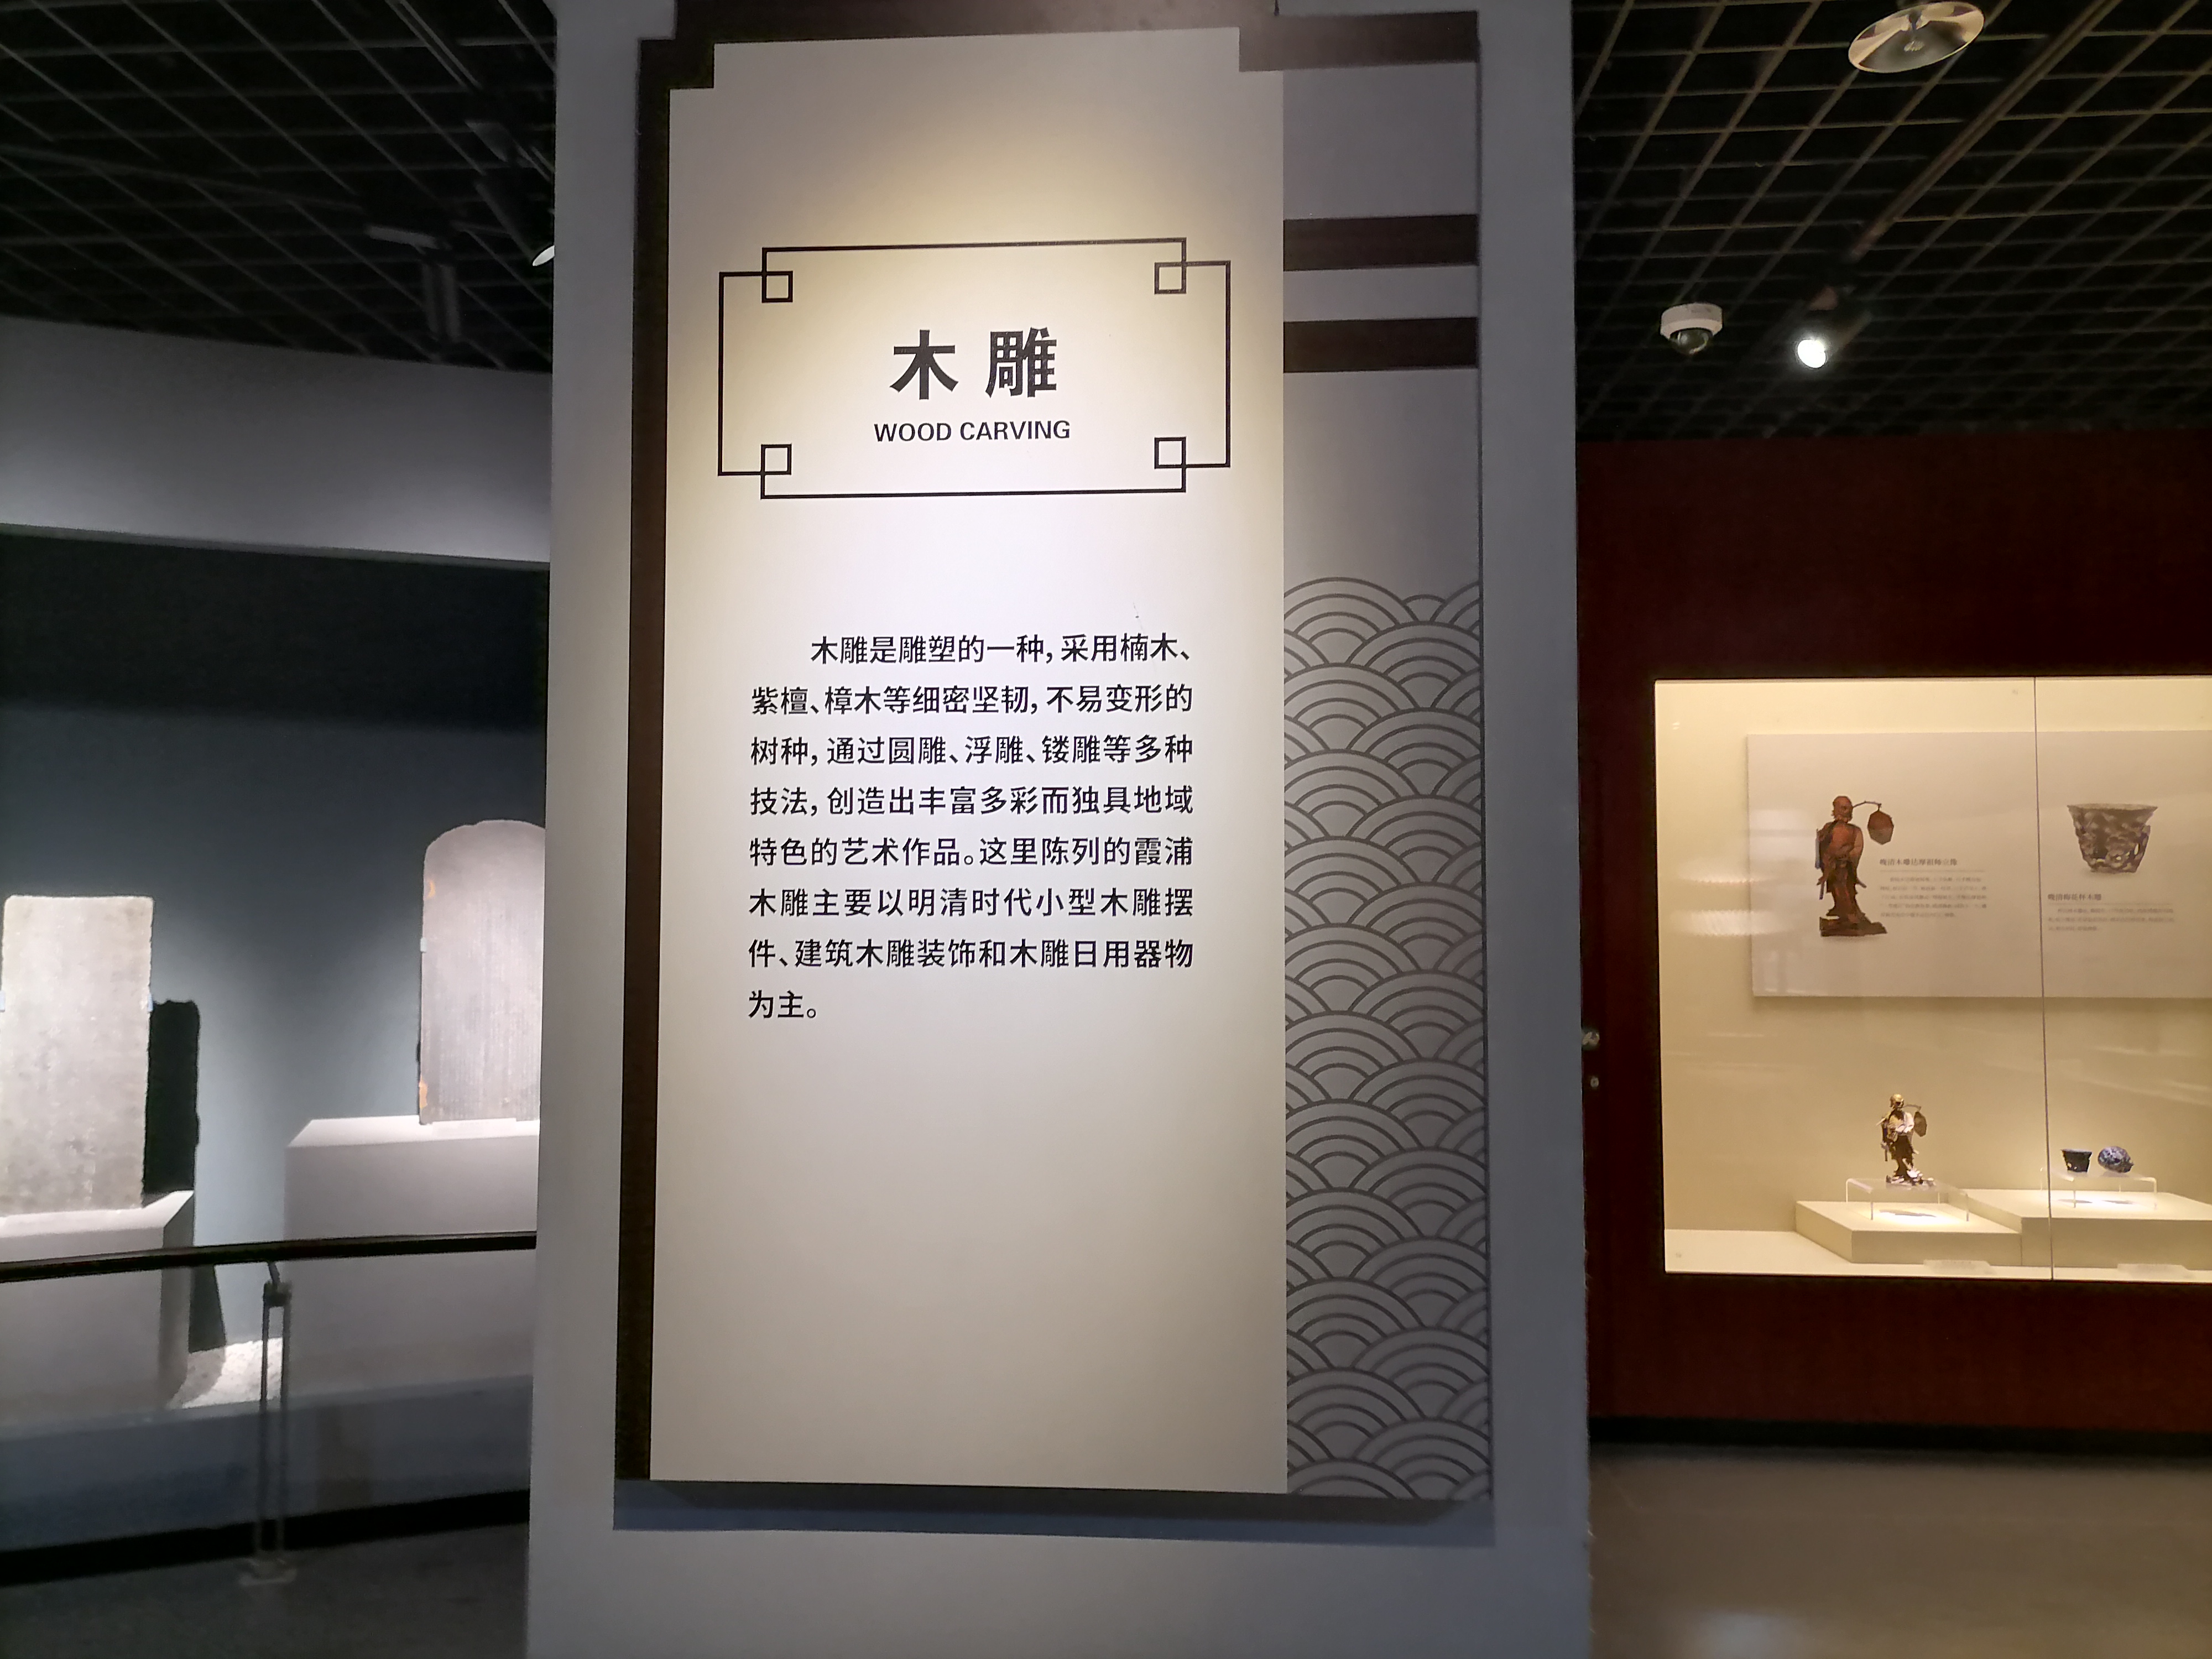 霞浦博物馆图片